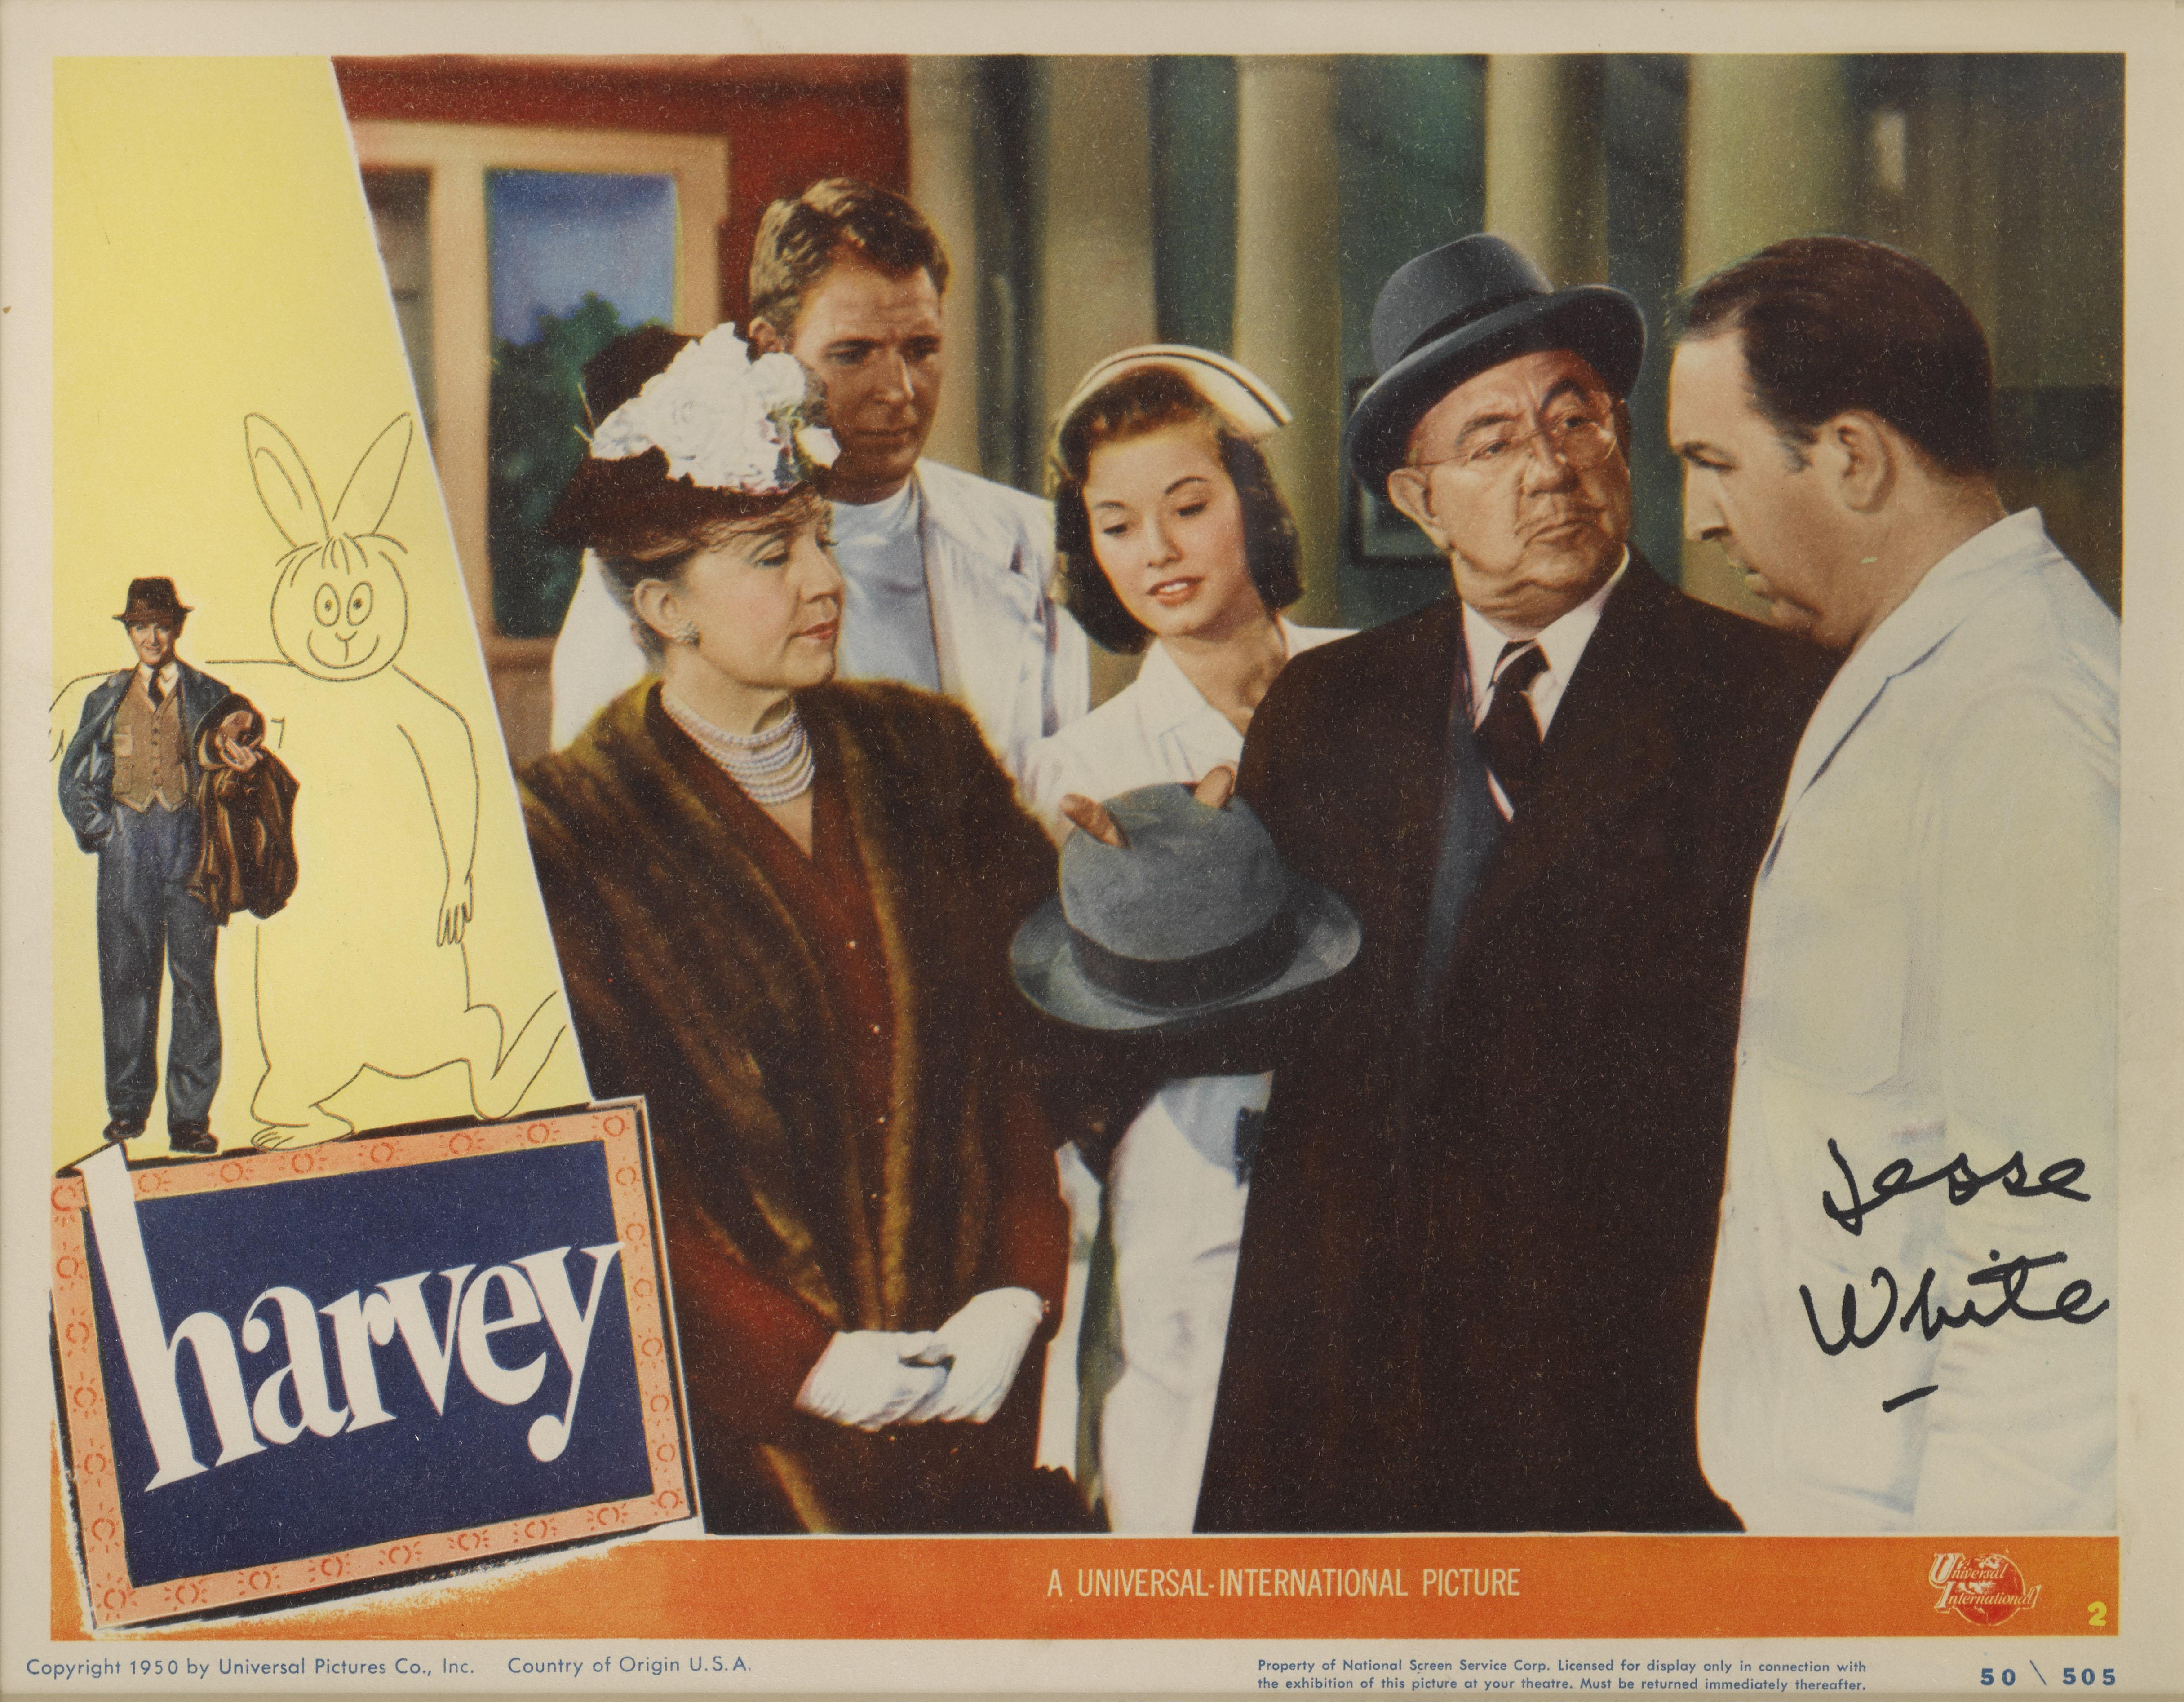 Original US Lobby card numéro 2 pour Harvey, 1950.
Cette carte de visite a été signée par Jesse White, qui jouait l'infirmier, qui tombe amoureux de la sœur d'Elwood, Myrtle Mae
Cette carte de visite se trouvait auparavant dans la collection d'un